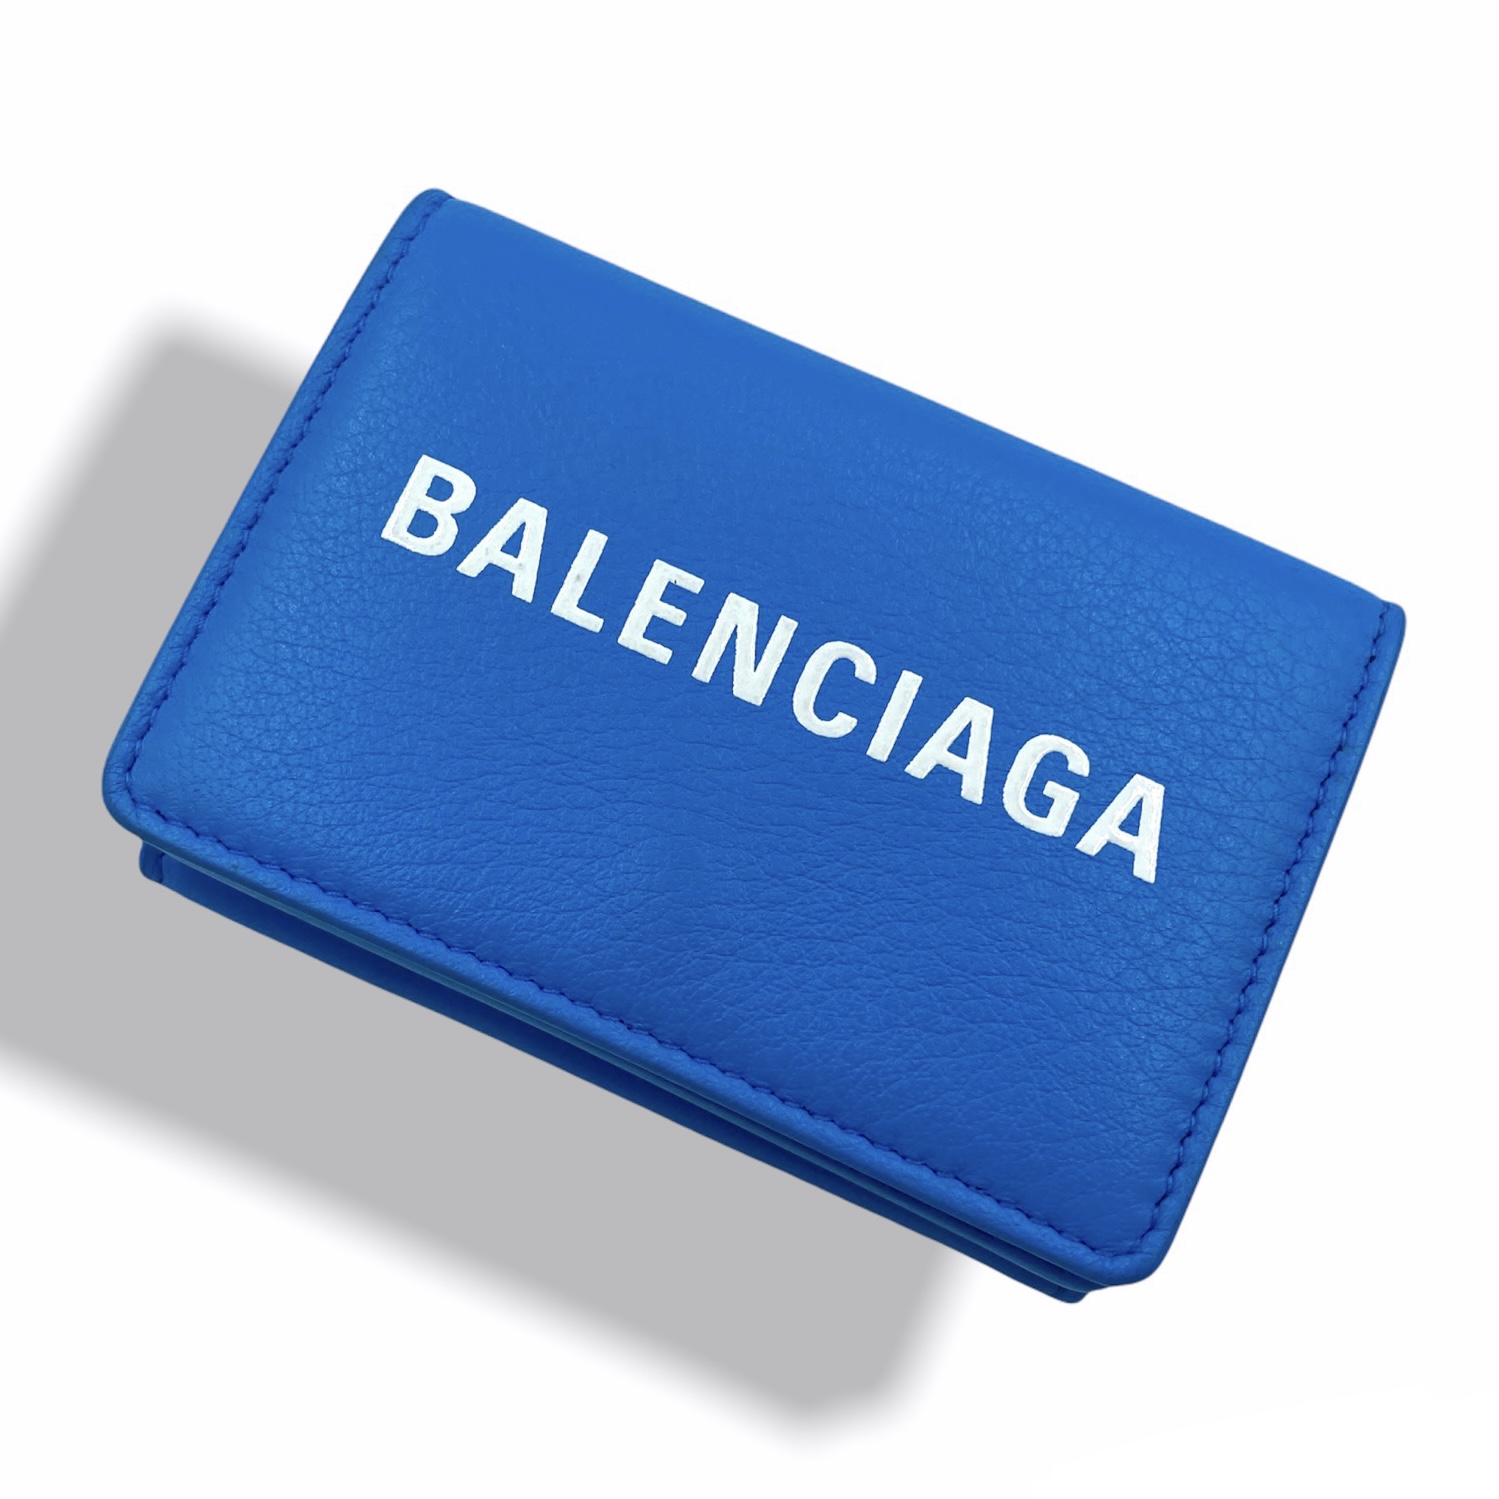 BALENCIAGA バレンシアガ ペーパーミニ コンパクトウォレット ブルー 594312